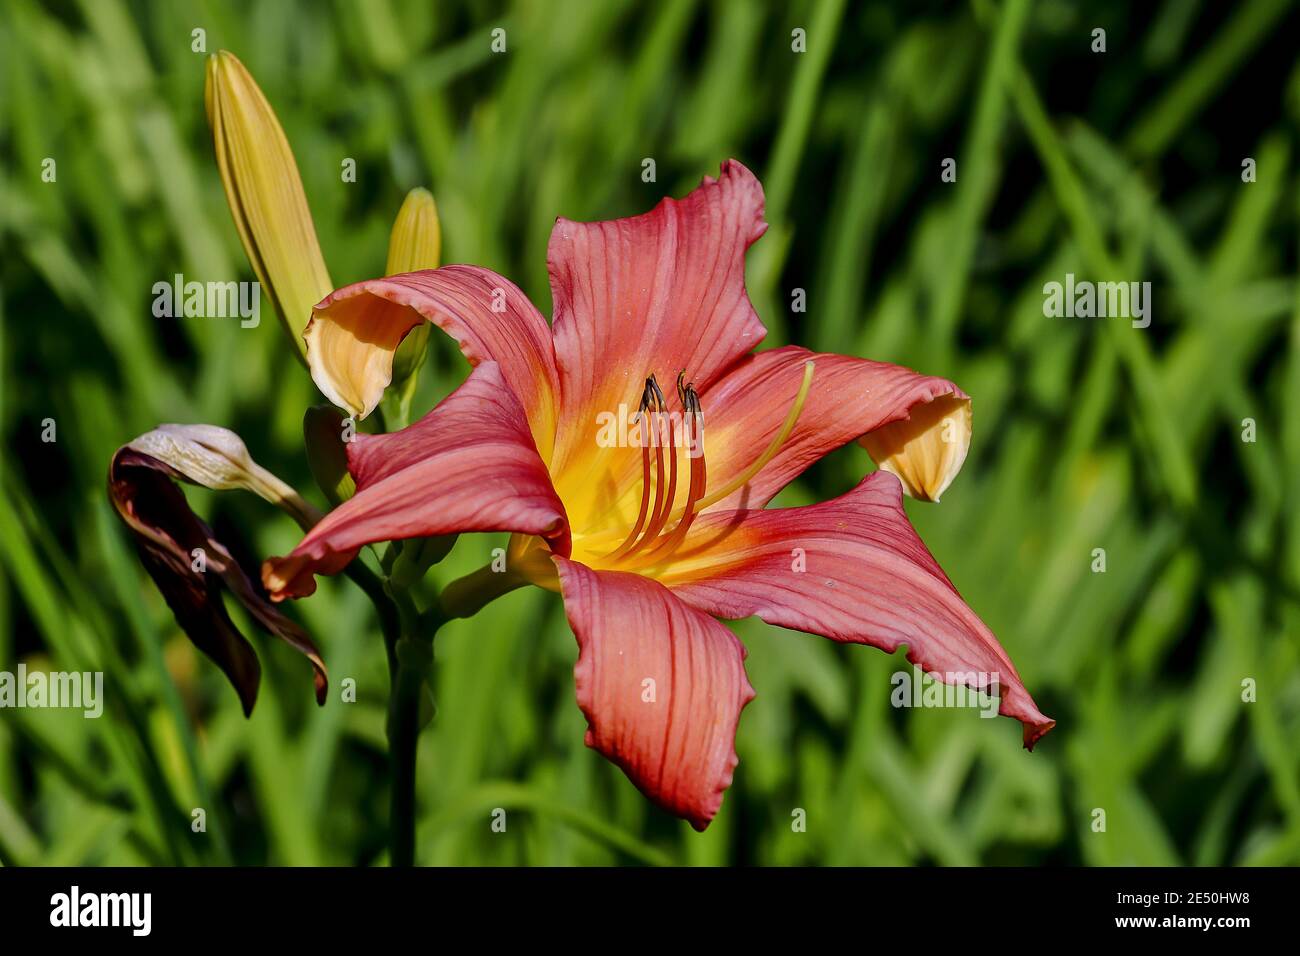 Flower of daylily named Catherine Woodberry, Hemerocallis, Liliaceae, Bavaria, Germany Stock Photo